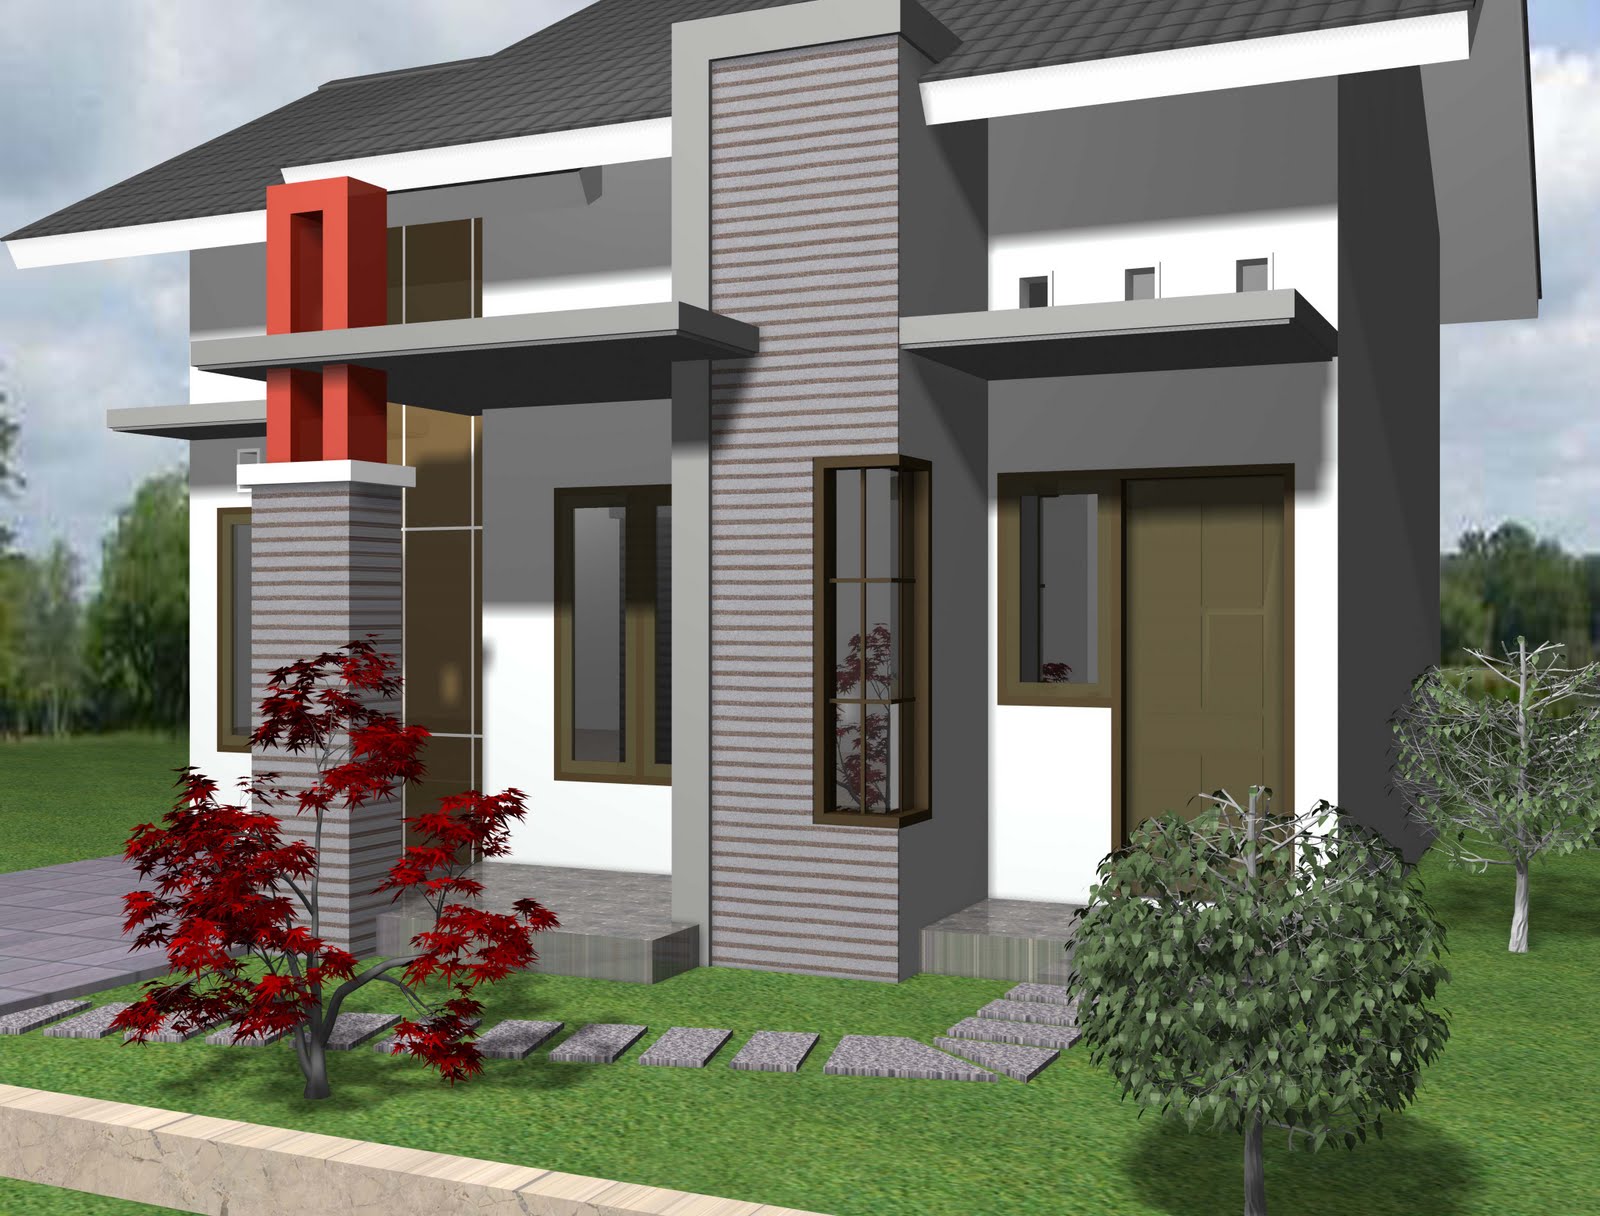 Desain Rumah Sederhana 1 Lantai Model Minimalis Mewah 2015